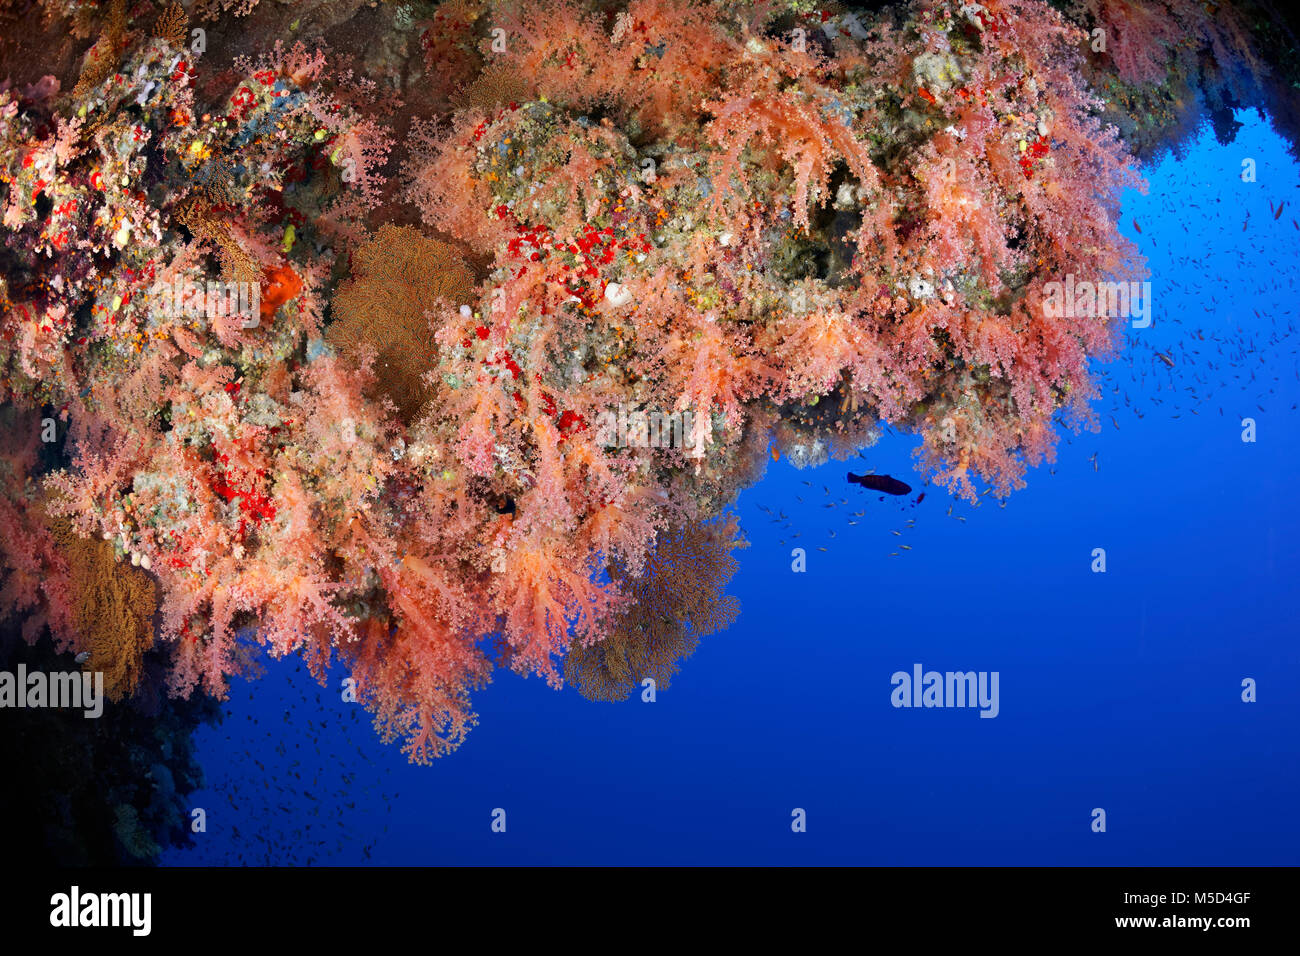 Les récifs coralliens, la végétation avec des coraux mous et Éponges (Spongiaire), red, Red Sea, Egypt Banque D'Images